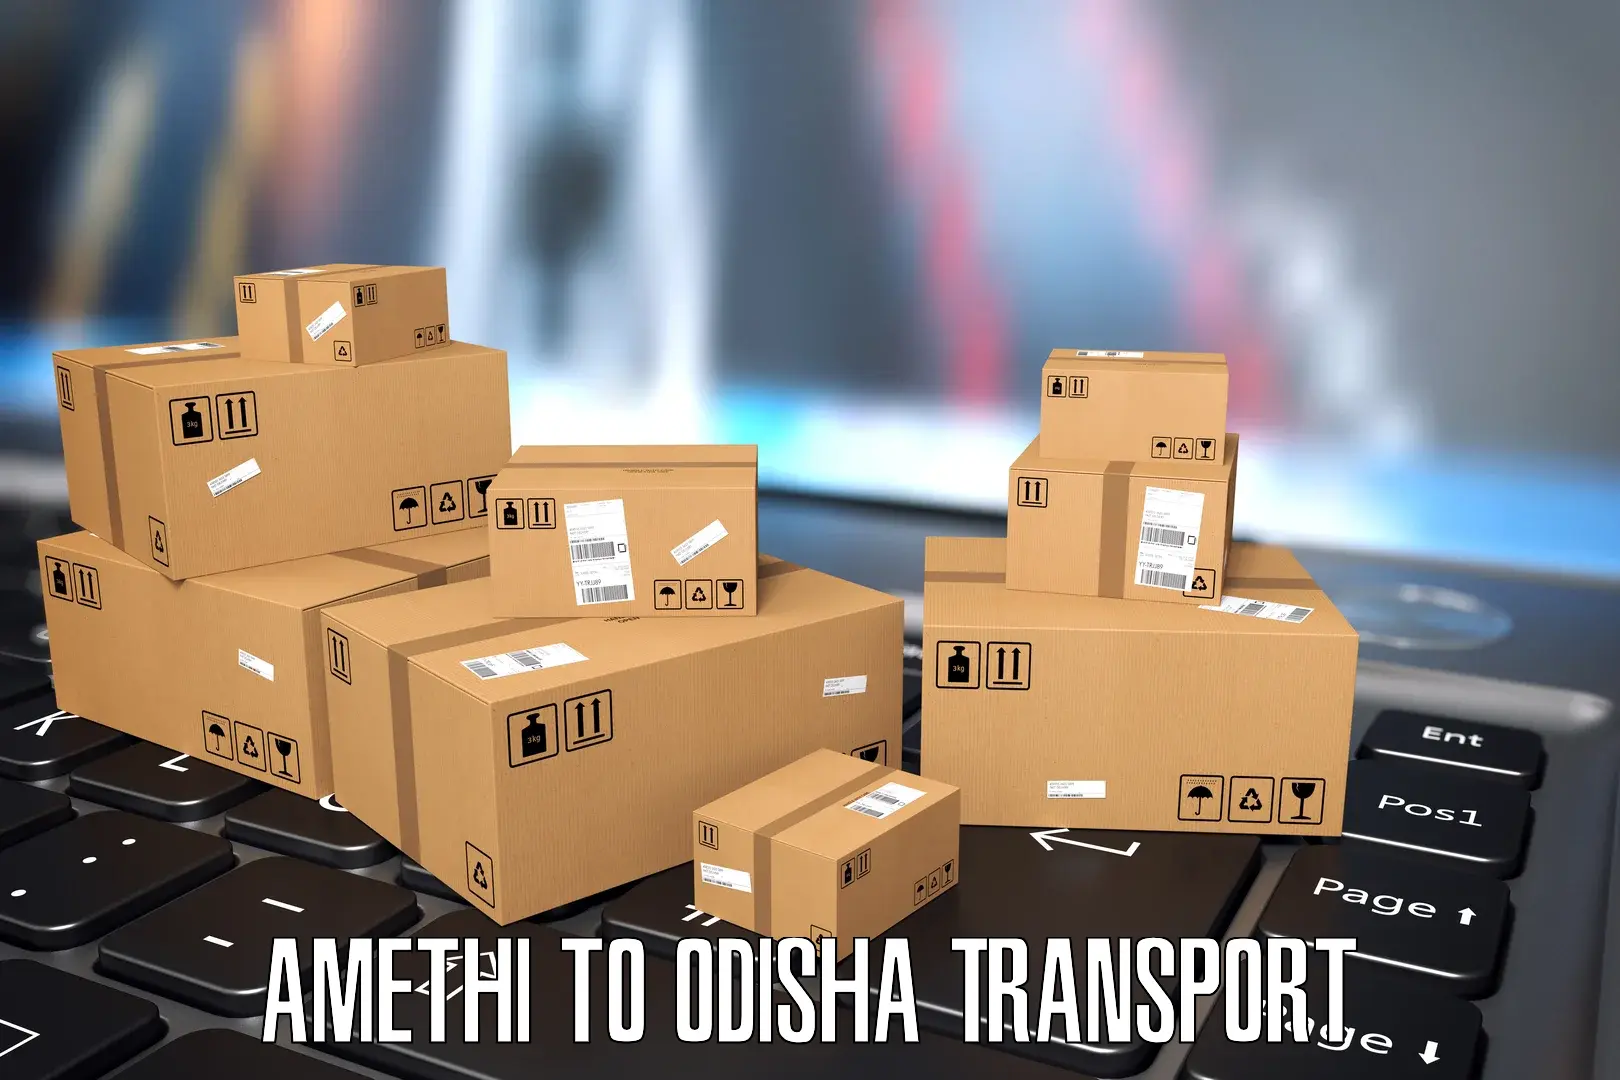 Online transport service Amethi to Kendujhar